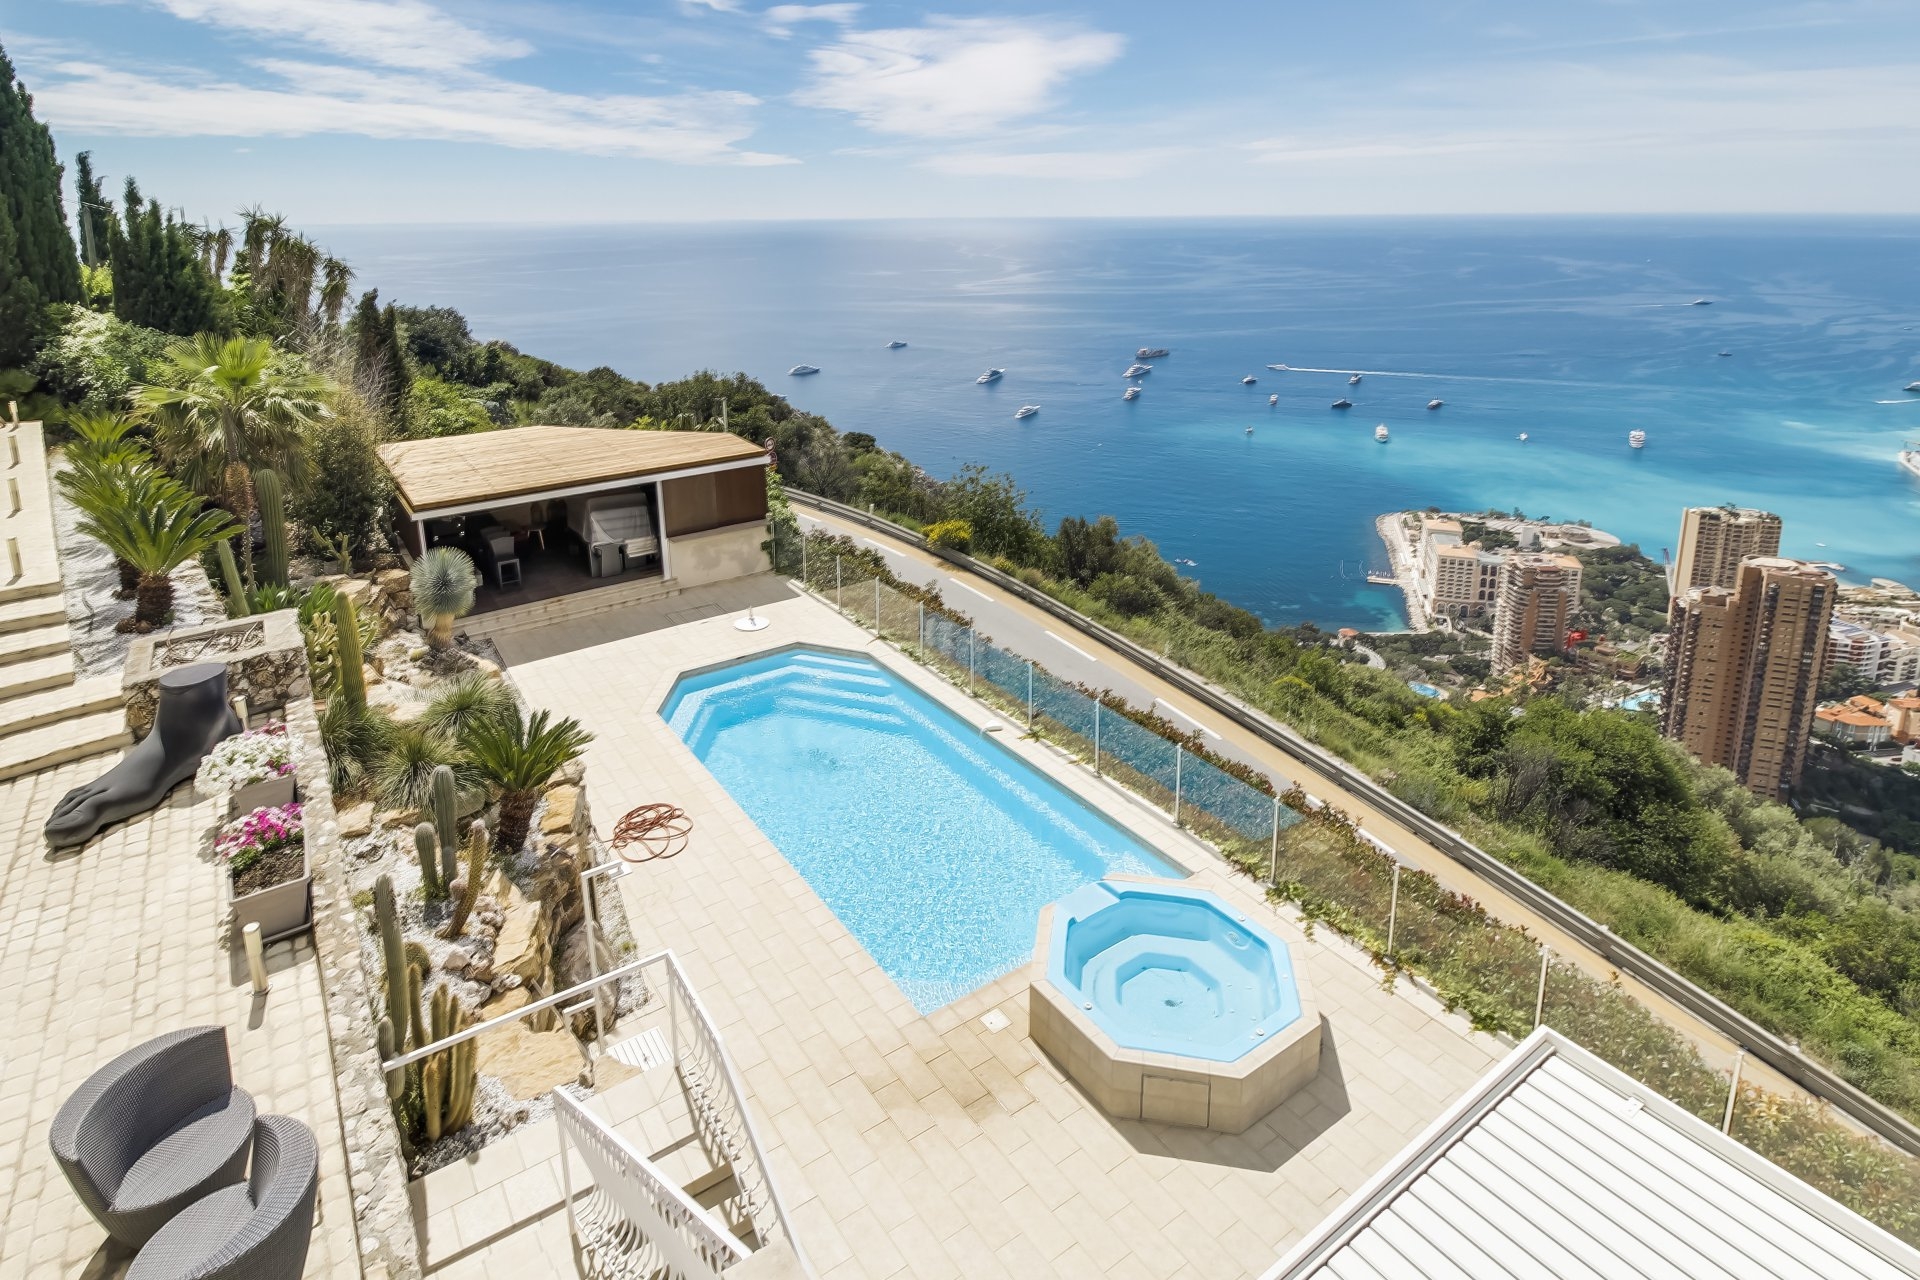 Dotta Villa for sale - VILLA DARLING - Roquebrune-Cap-Martin - Roquebrune-Cap-Martin - img0